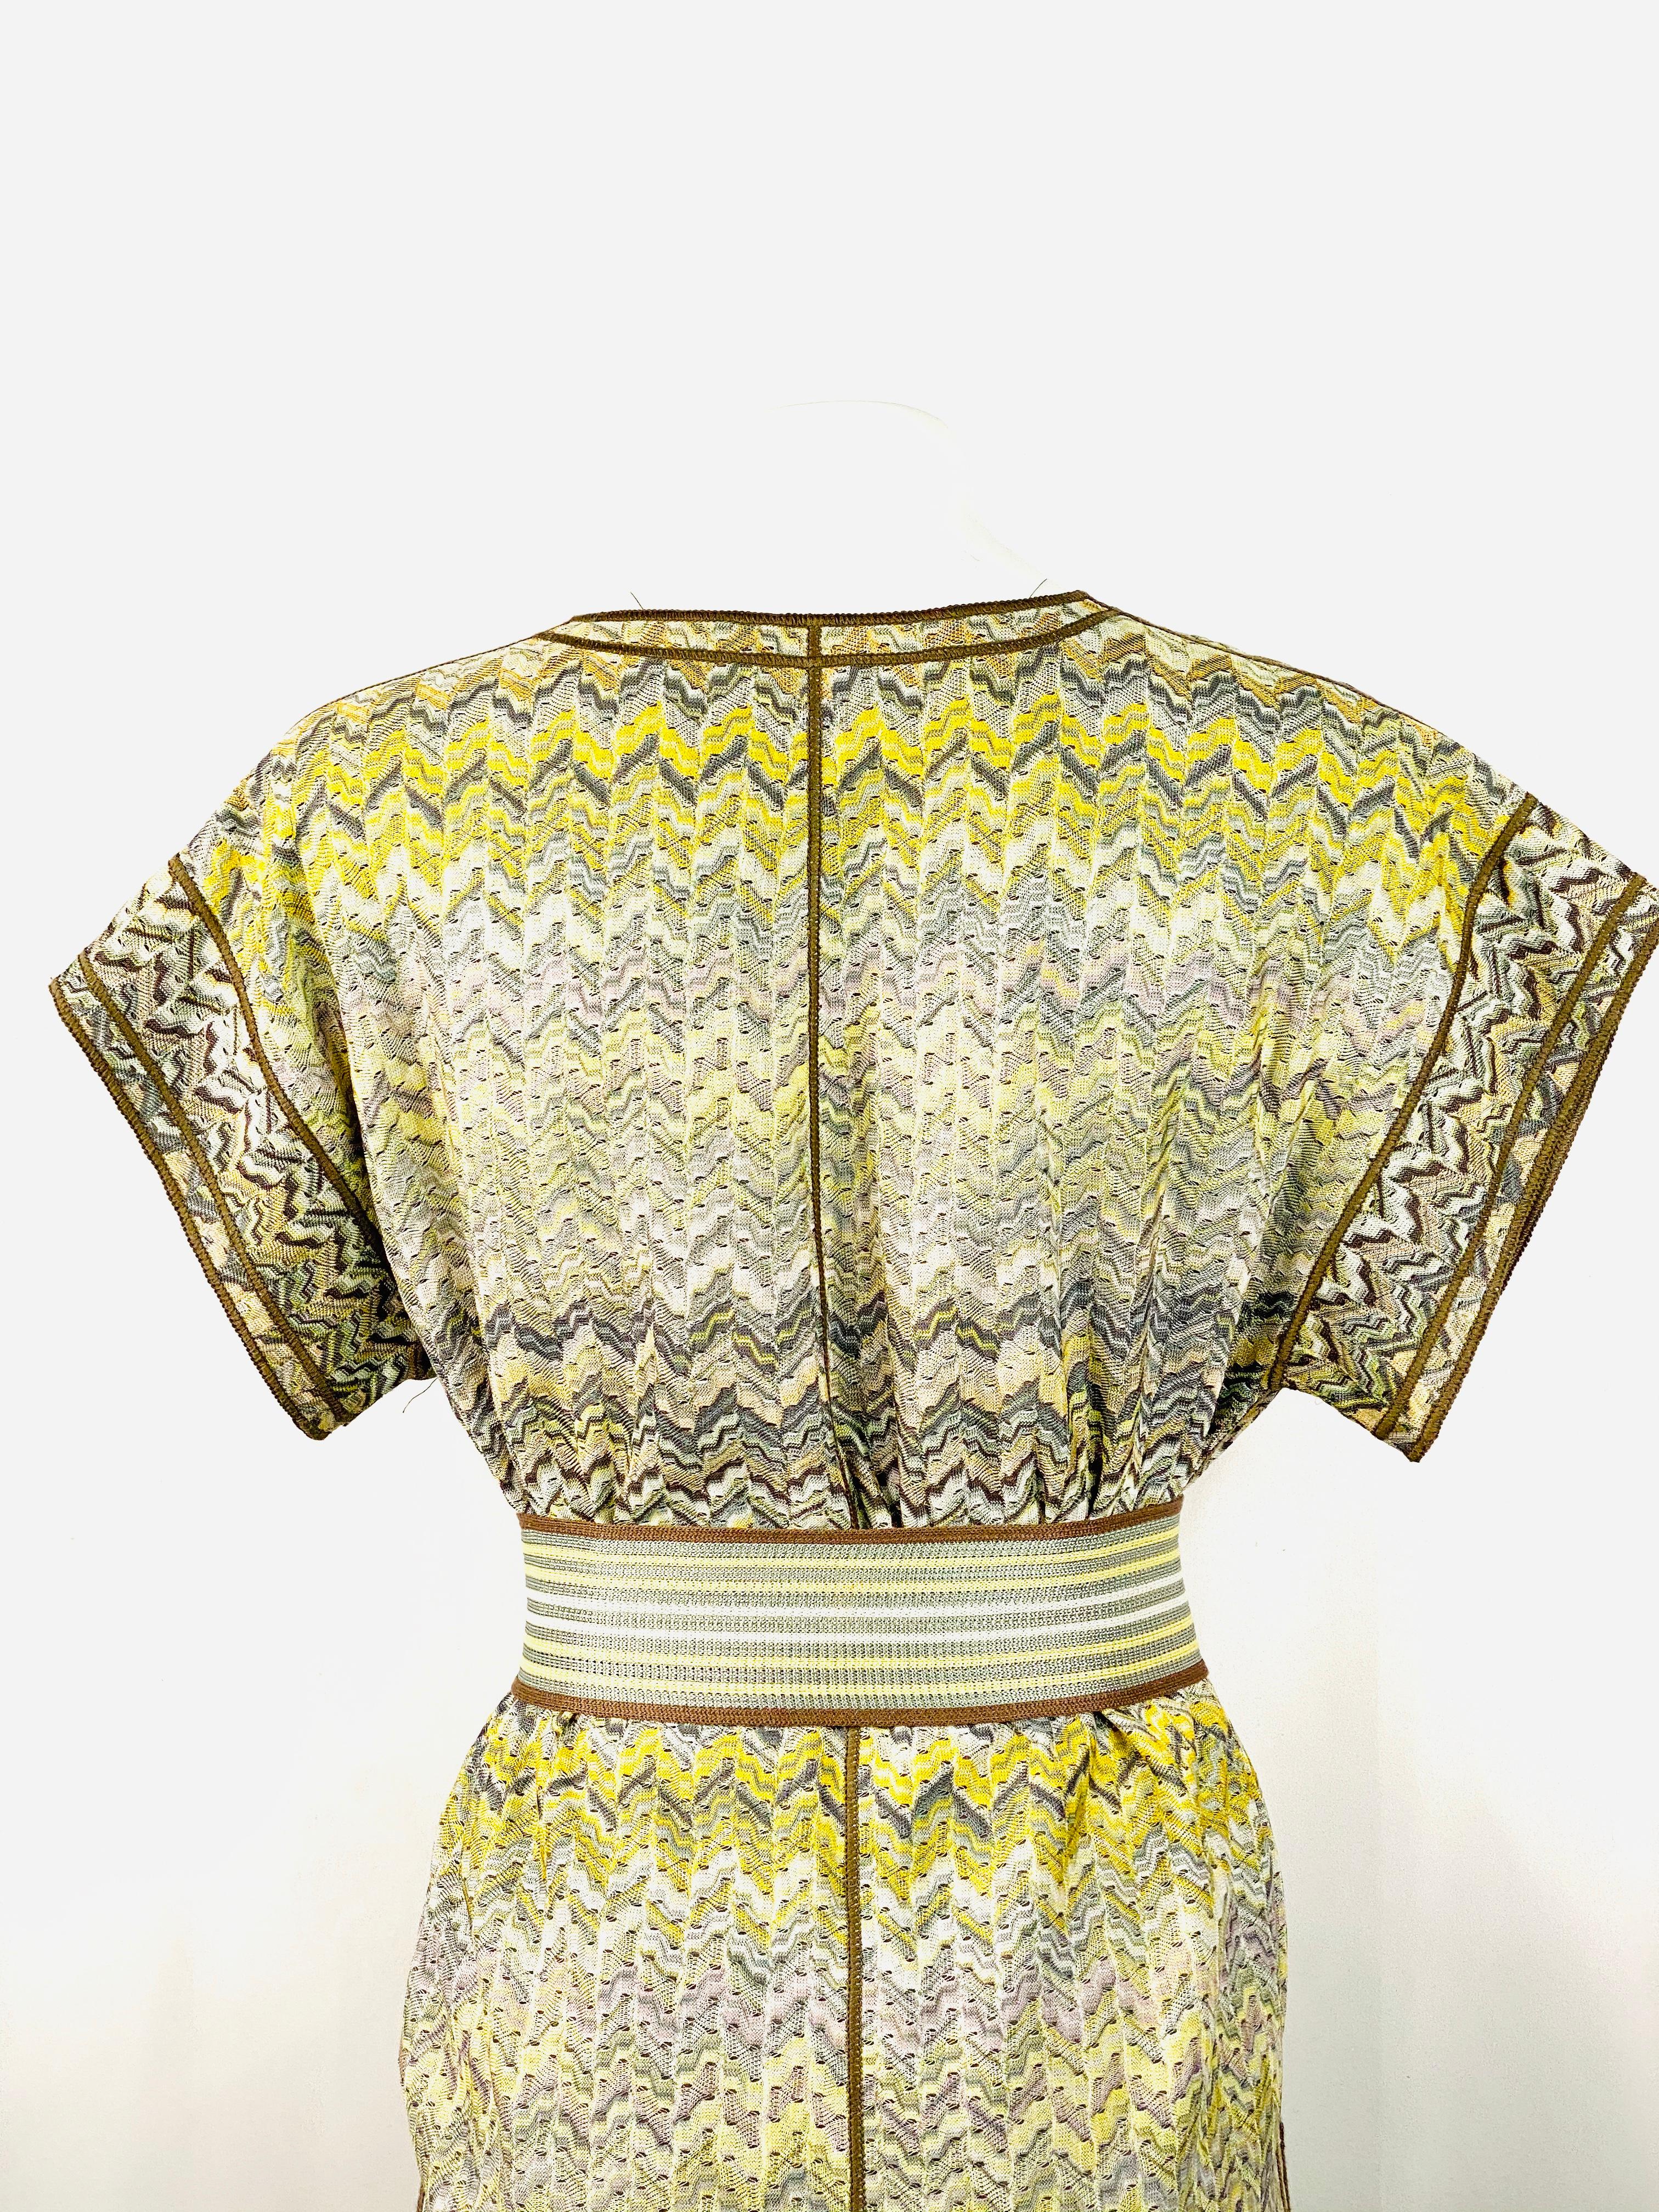 Women's Vintage Missoni Multi Color Coat Cover Up Mini Dress w/ Belt Size 42 For Sale